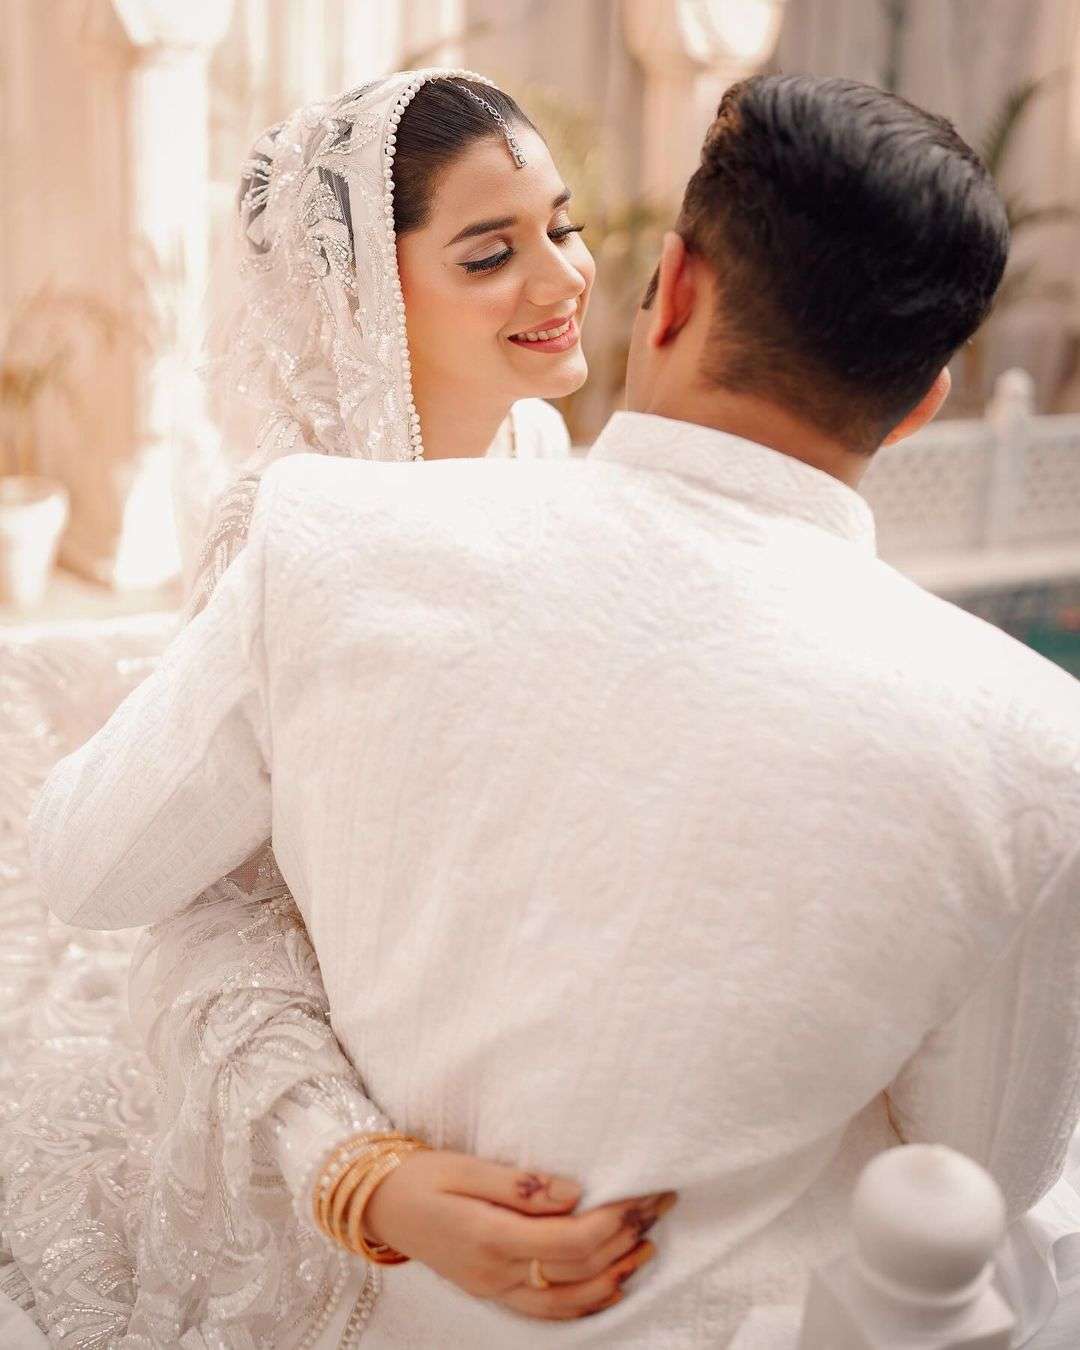 Imran Ashraf Wife Second Marriage